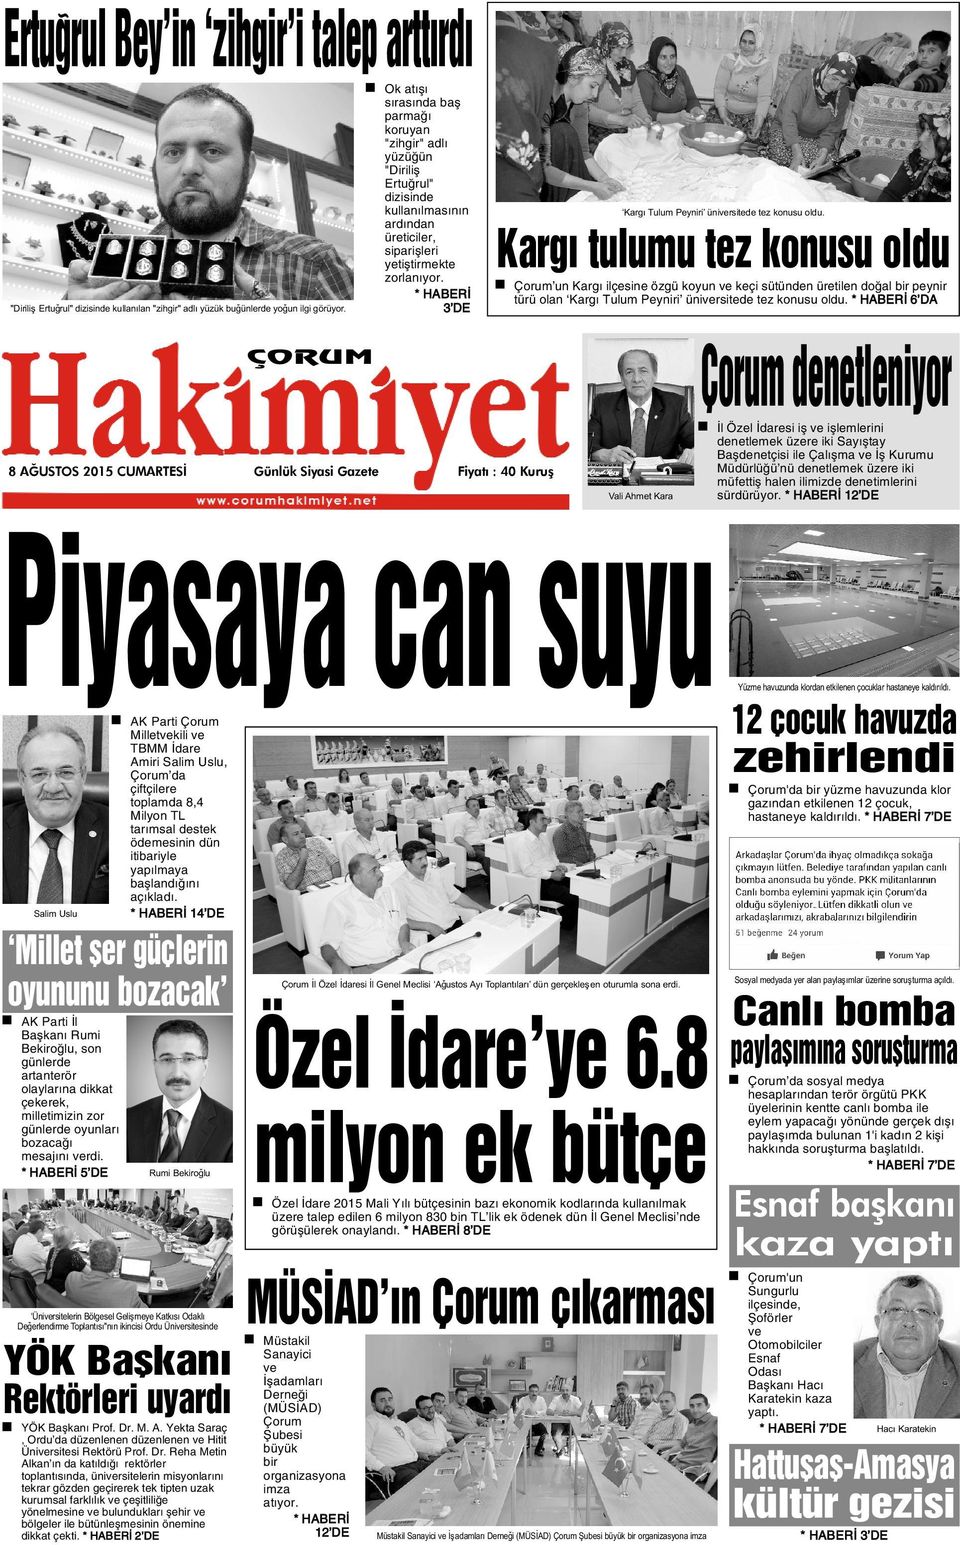 * HABERÝ 3 DE 8 AÐUSTOS 2015 CUMARTESÝ Günlük Siyasi Gazete Fiyatý : 40 Kuruþ Kargý Tulum Peyniri üniversitede tez konusu oldu.